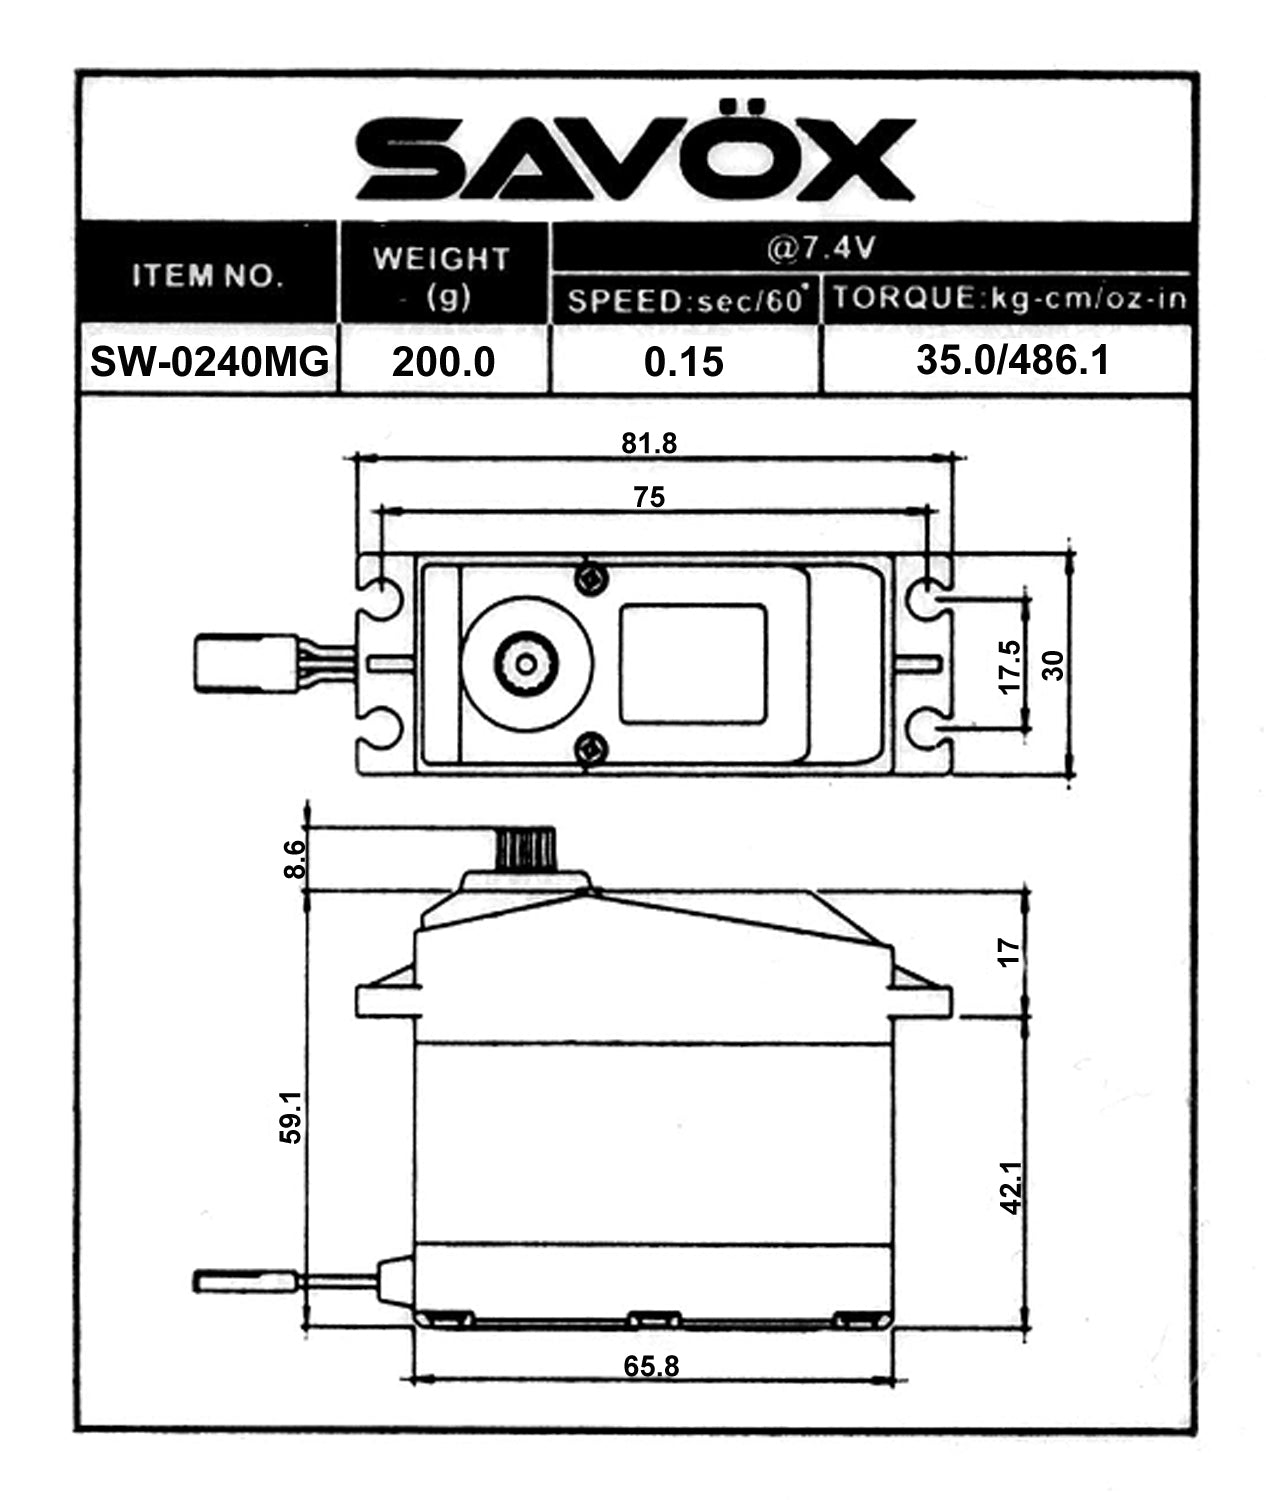 Savox SW-0240MG Servo de escala 1/5 digital a prueba de agua "Super Speed" (Alto voltaje)